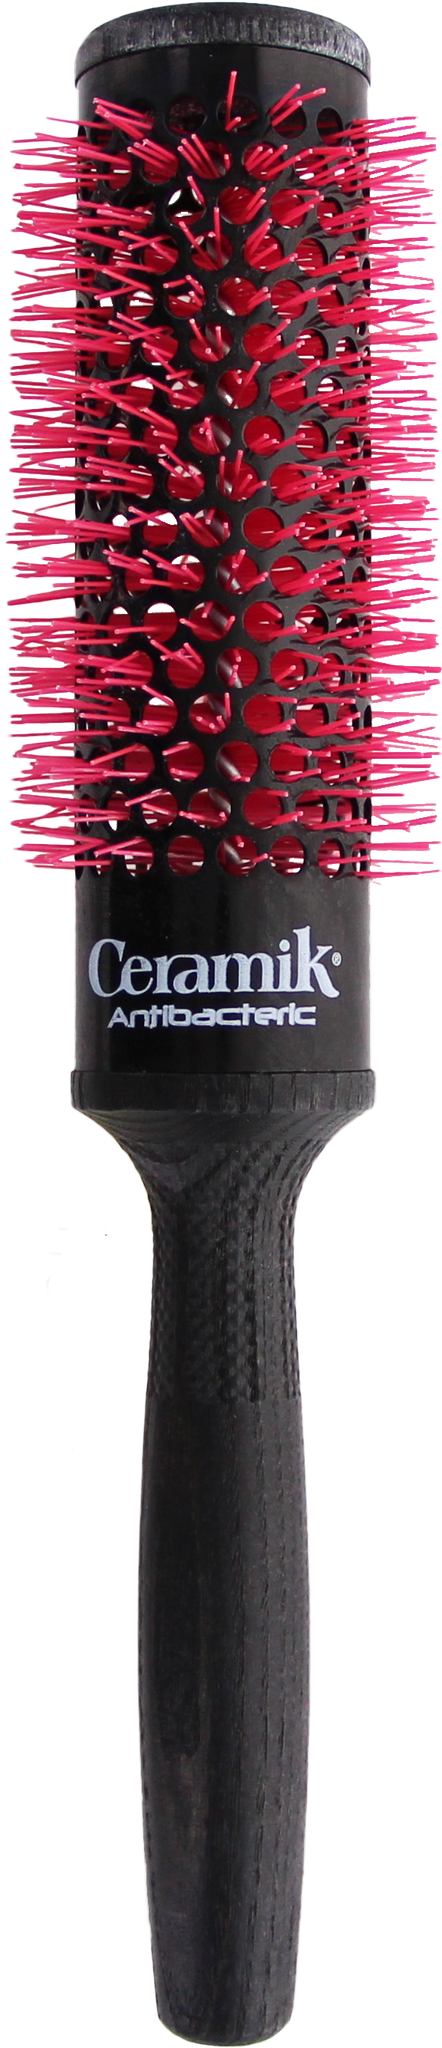 *Tek Ceramik Antibateric Oxy Round Brush 36mm